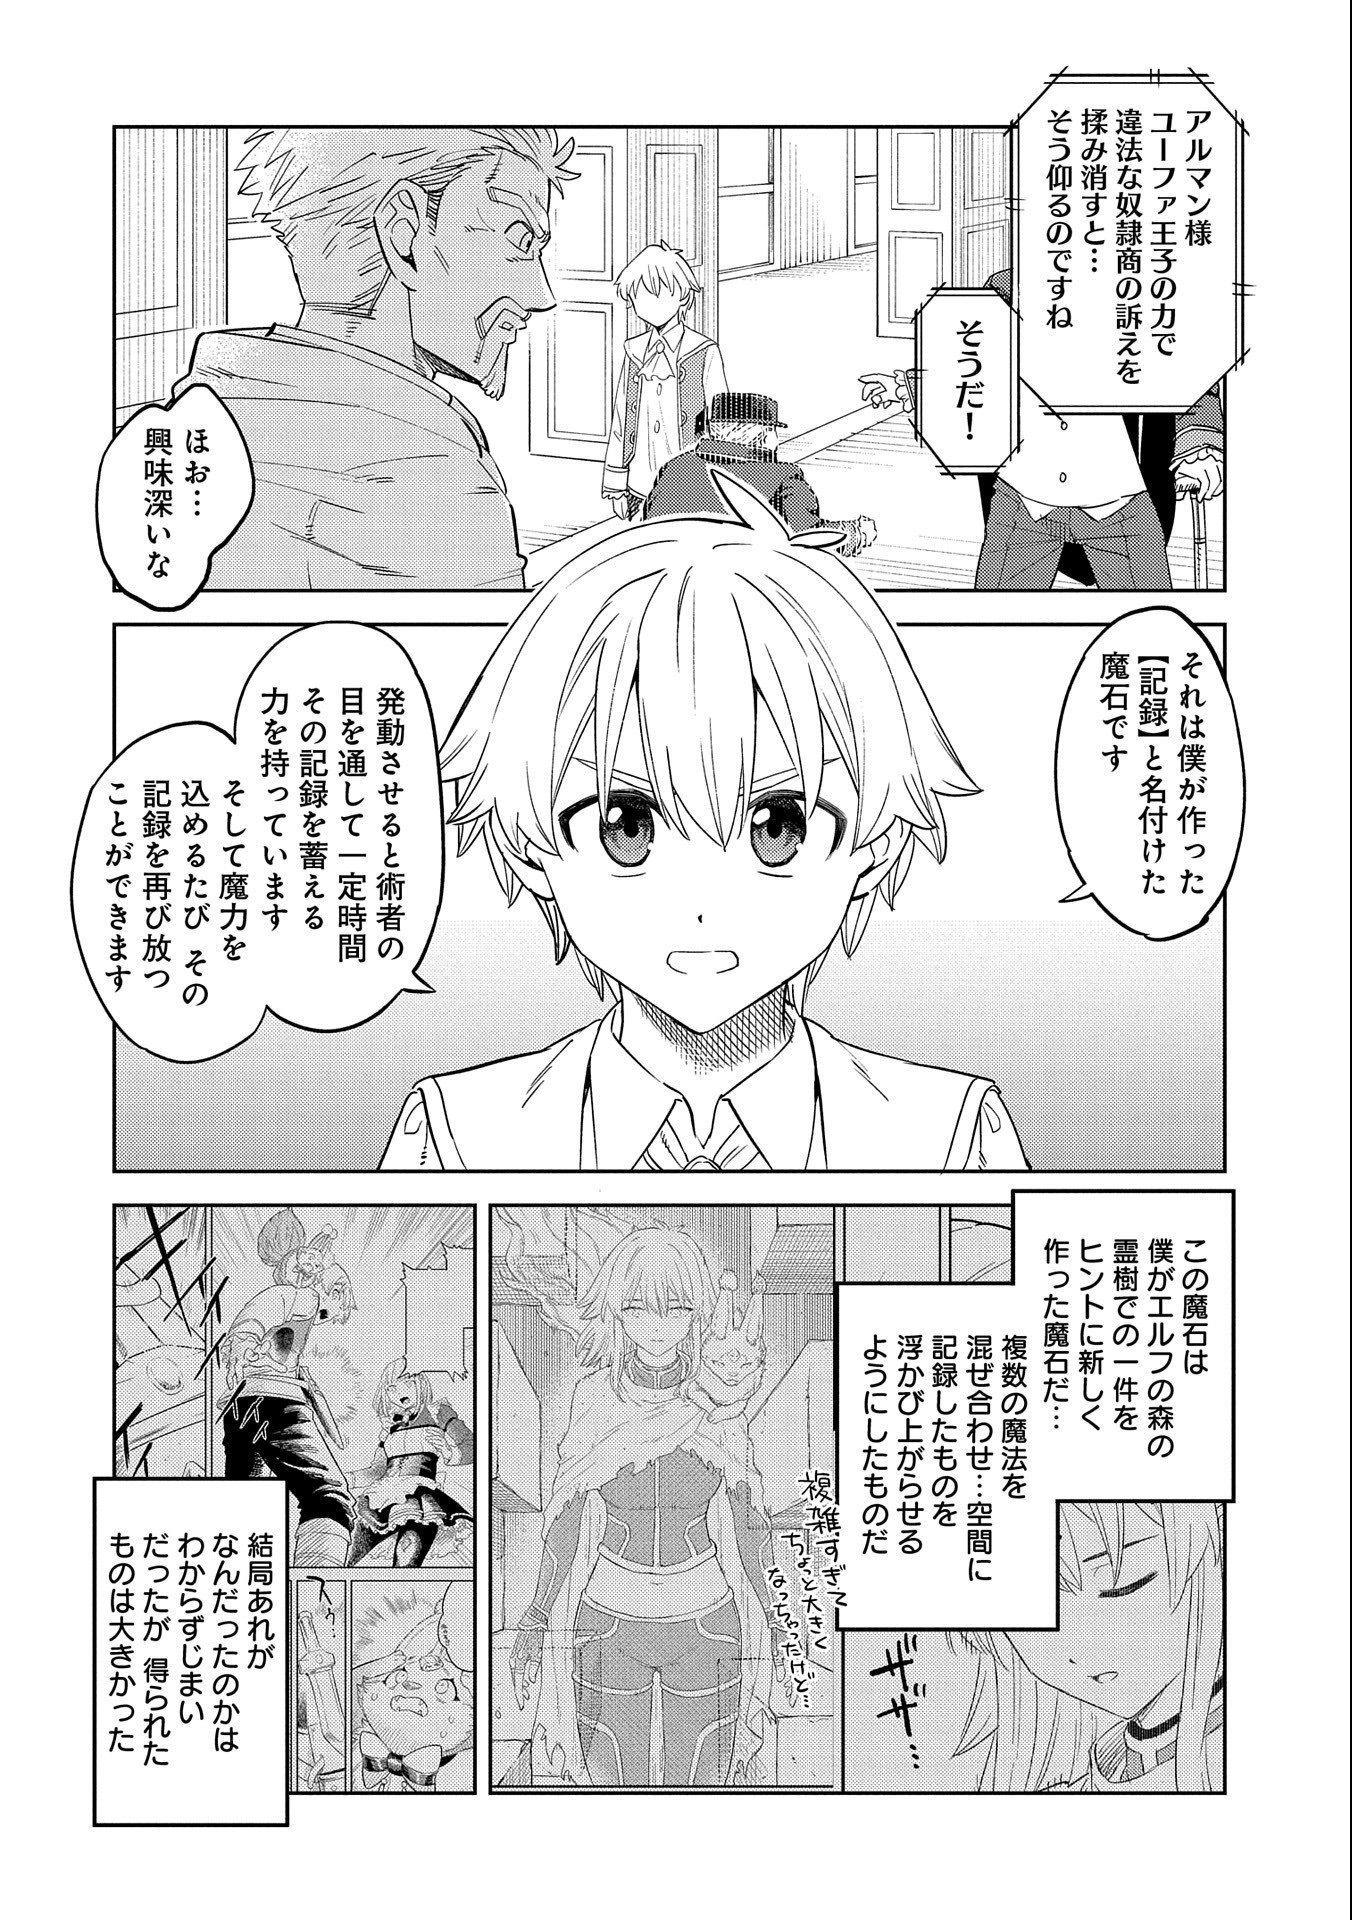 Maishiya Alexandrite E Youkoso: Kikakugai No Tokkyuu Housekishi To Mofumofu Housekijuu No Isekai Hanjouki - Chapter 15 - Page 2